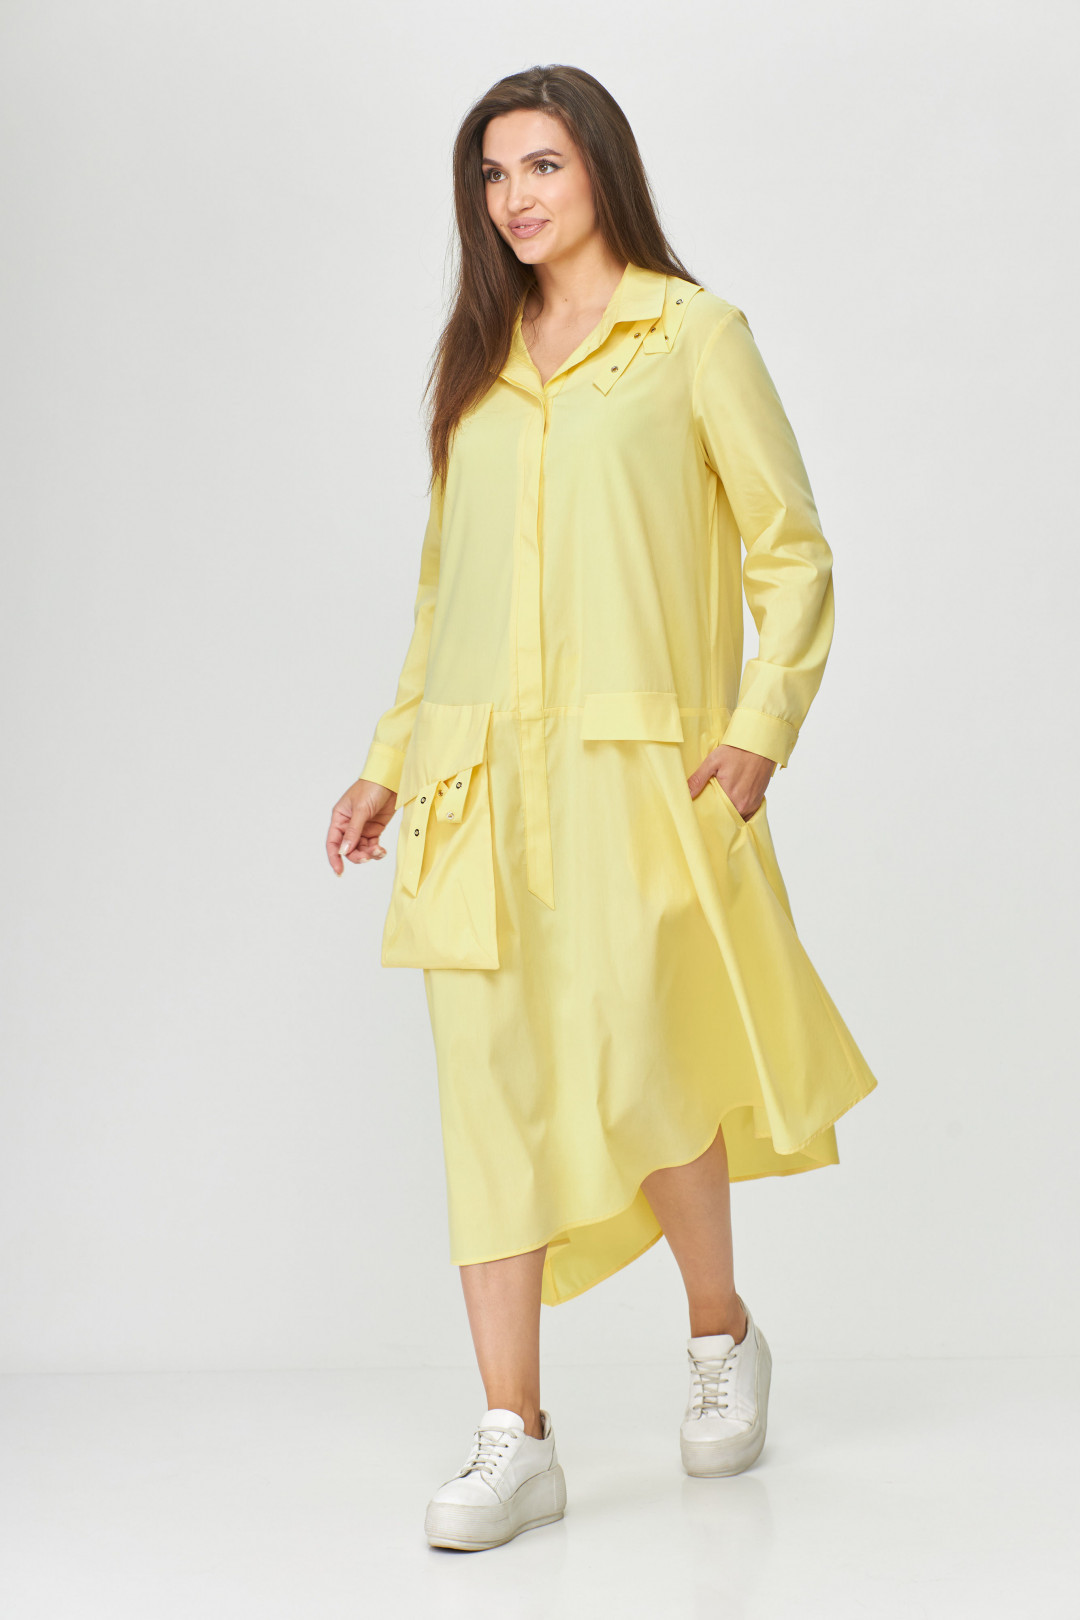 Платье Abbi style 1009 желтый